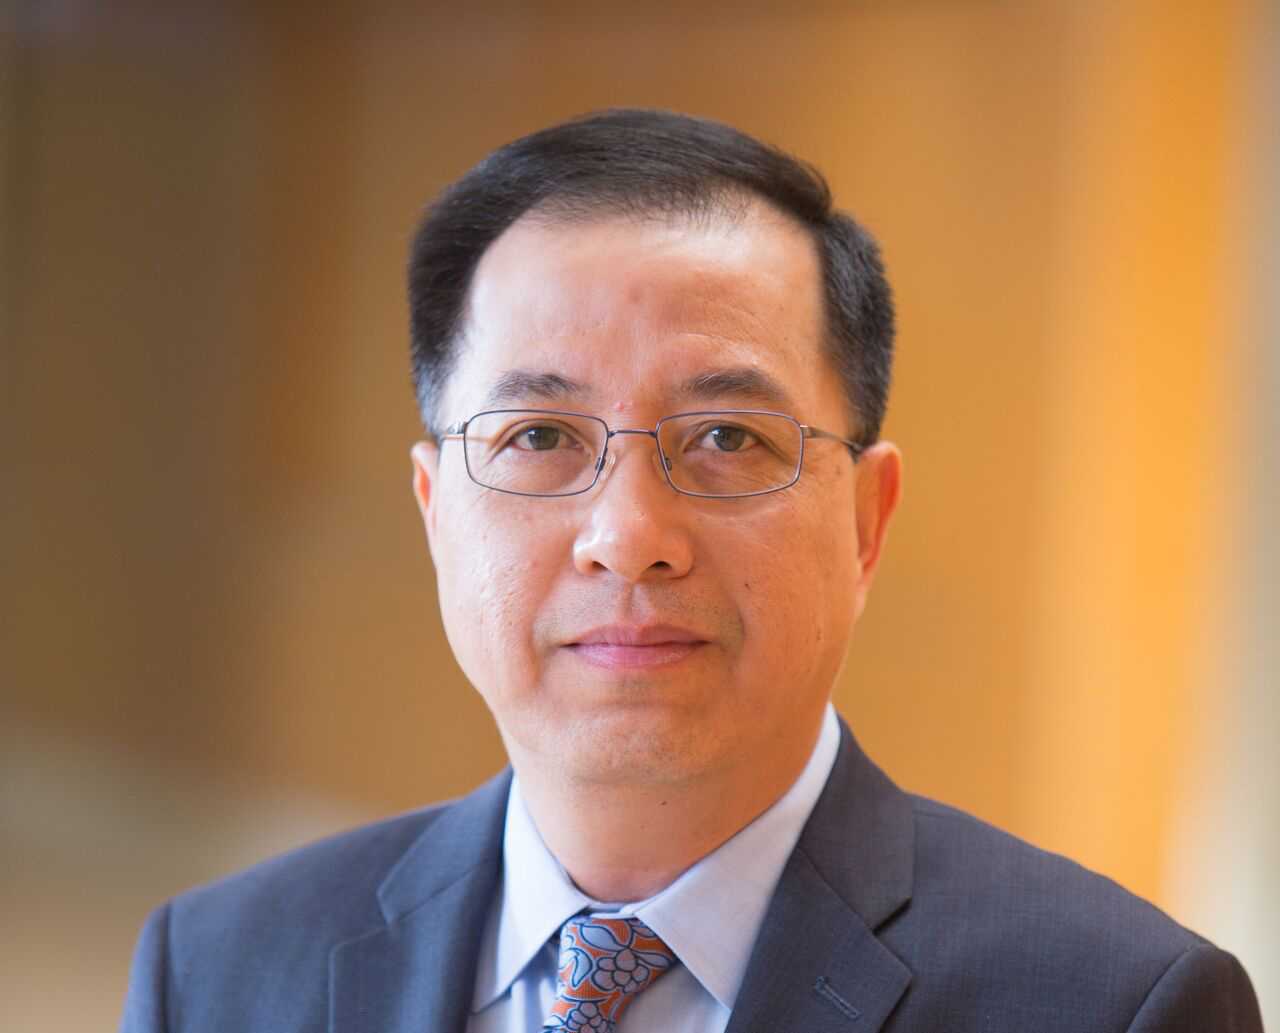 Dr. Bang Hoang awarded $1.6 million NIH grant